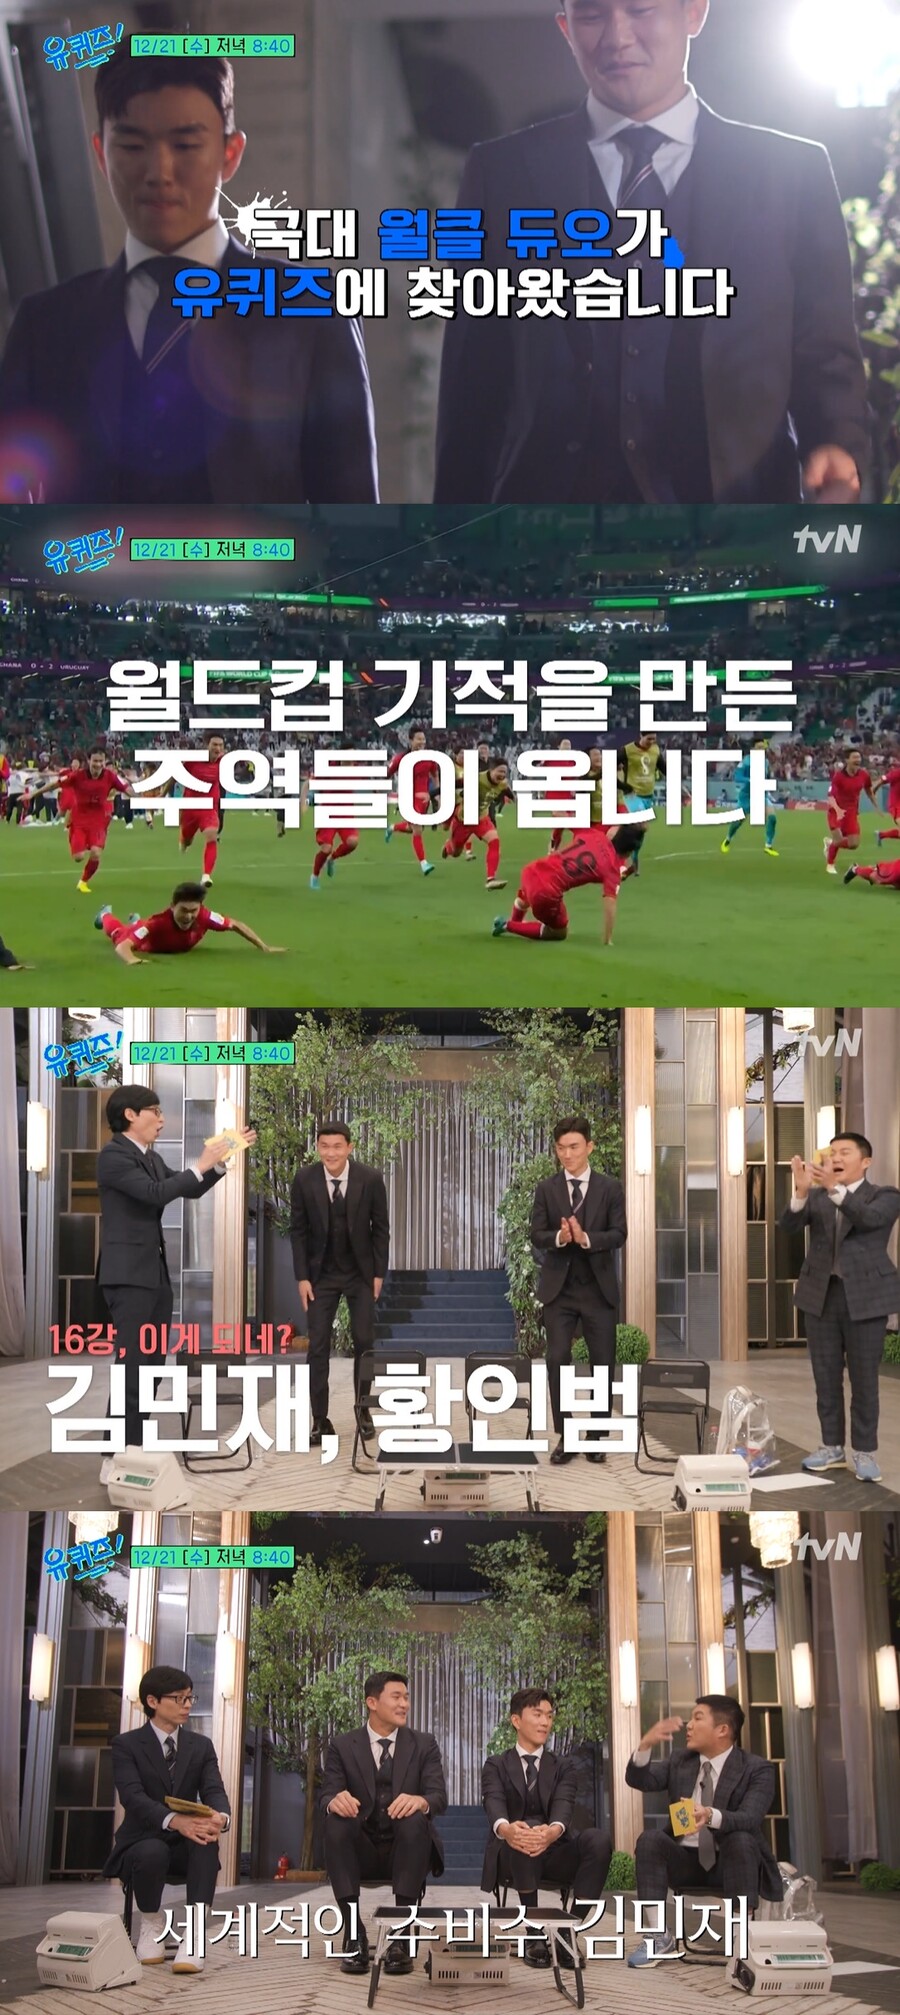 ▲ Uma prévia do programa de entretenimento da tvN 'You Quiz on the Block'.  Fonte |  tvN